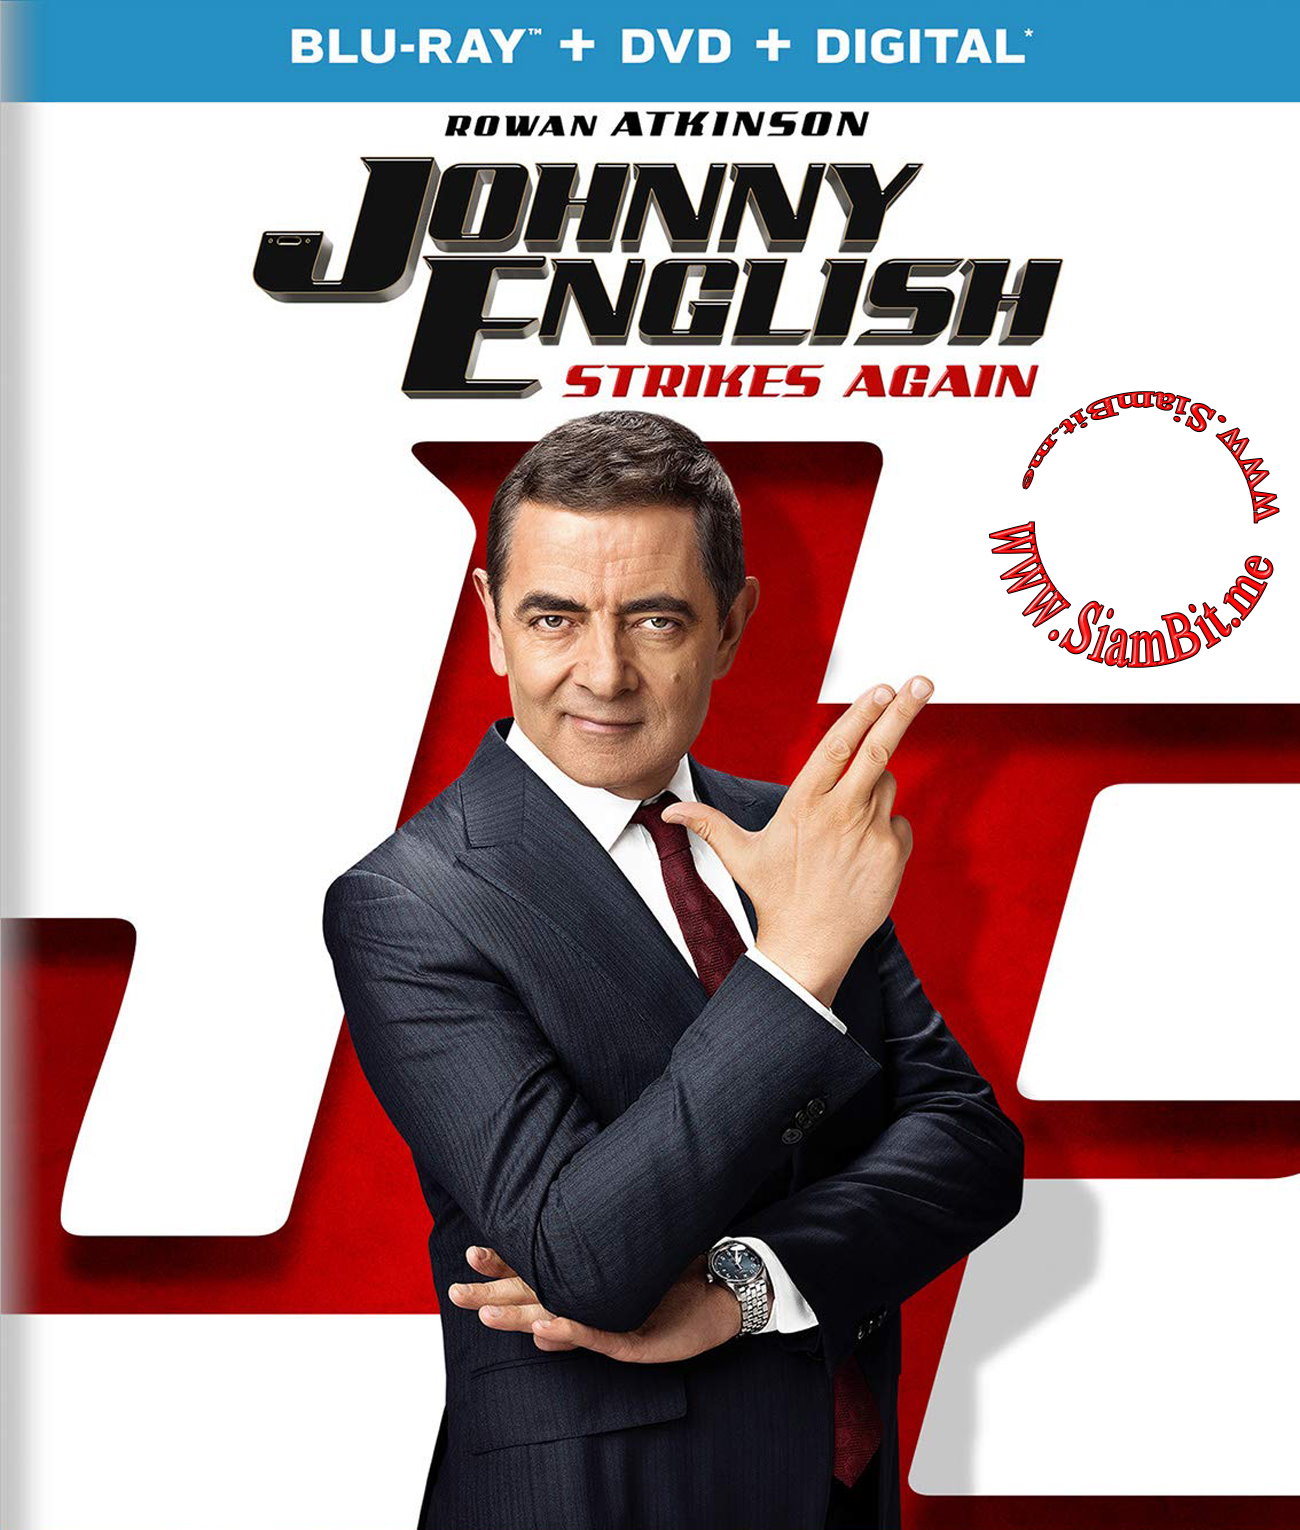 Агент джонни инглиш 3.0 качестве. Роуэн Аткинсон агент Джонни Инглиш 3. Агент Джонни Инглиш. 3.0. (2018) Blu ray Cover. Агент Джонни Инглиш 3.0 (2018) Постер. Агент Джонни Инглиш. (2003) Blu ray Cover.